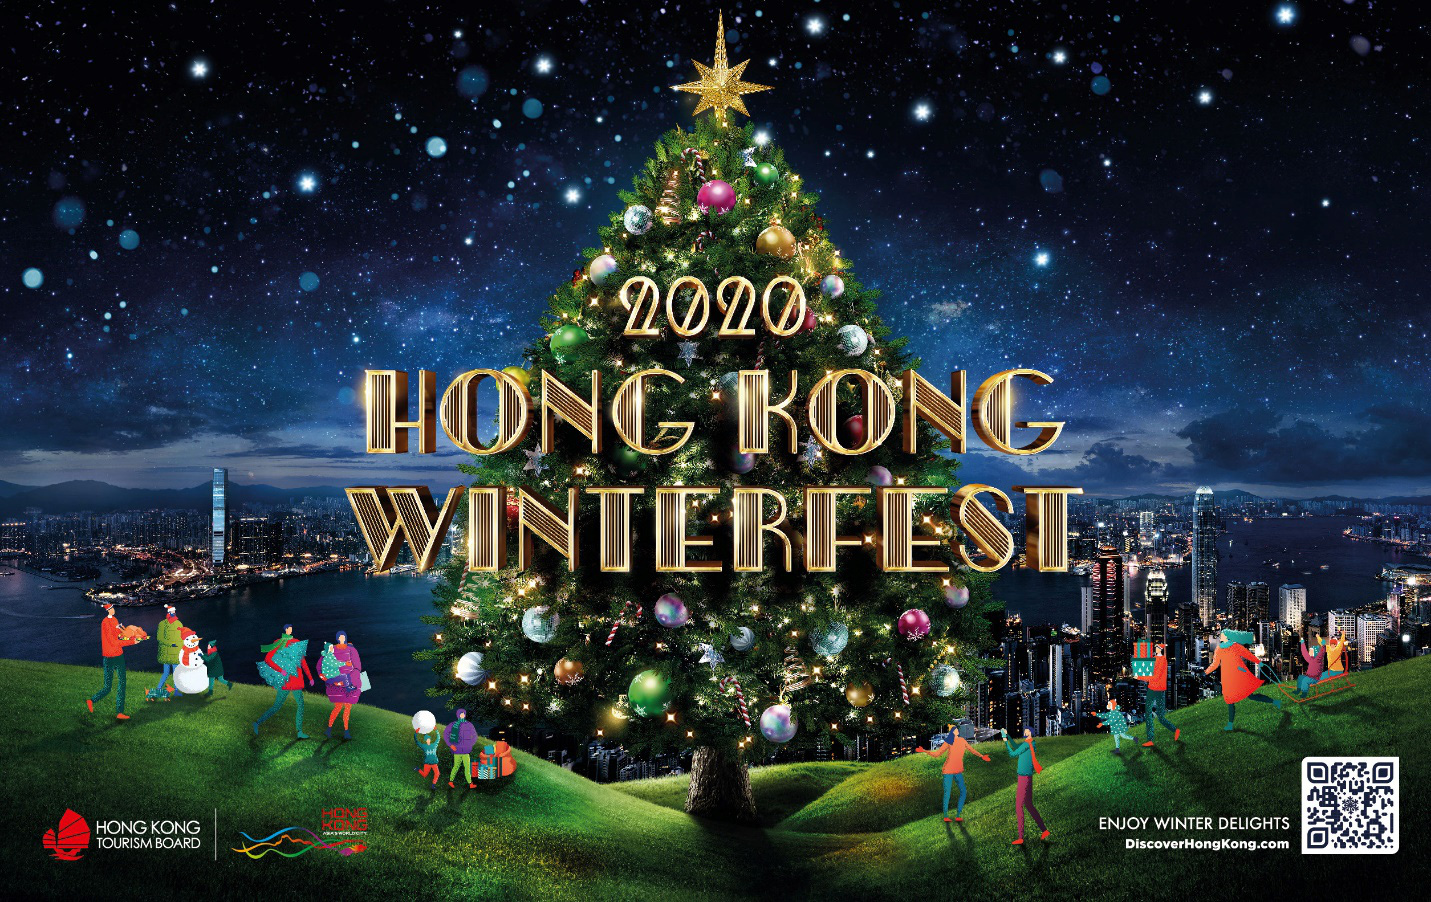 Trải nghiệm Giáng sinh Hồng Kông 2024: Hồng Kông luôn là điểm đến lý tưởng cho những ai muốn trải nghiệm một mùa Giáng sinh đầy sôi động và phấn khích. Năm 2024, bạn sẽ được chiêm ngưỡng những thiết kế ánh sáng đẹp mắt, thưởng thức những món ăn ngon tuyệt cùng với âm nhạc lãng mạn đầy lôi cuốn. Hãy cùng chinh phục đỉnh Victoria Peak và ngắm bầu trời đầy sao trong một mùa giáng sinh không thể nào quên.